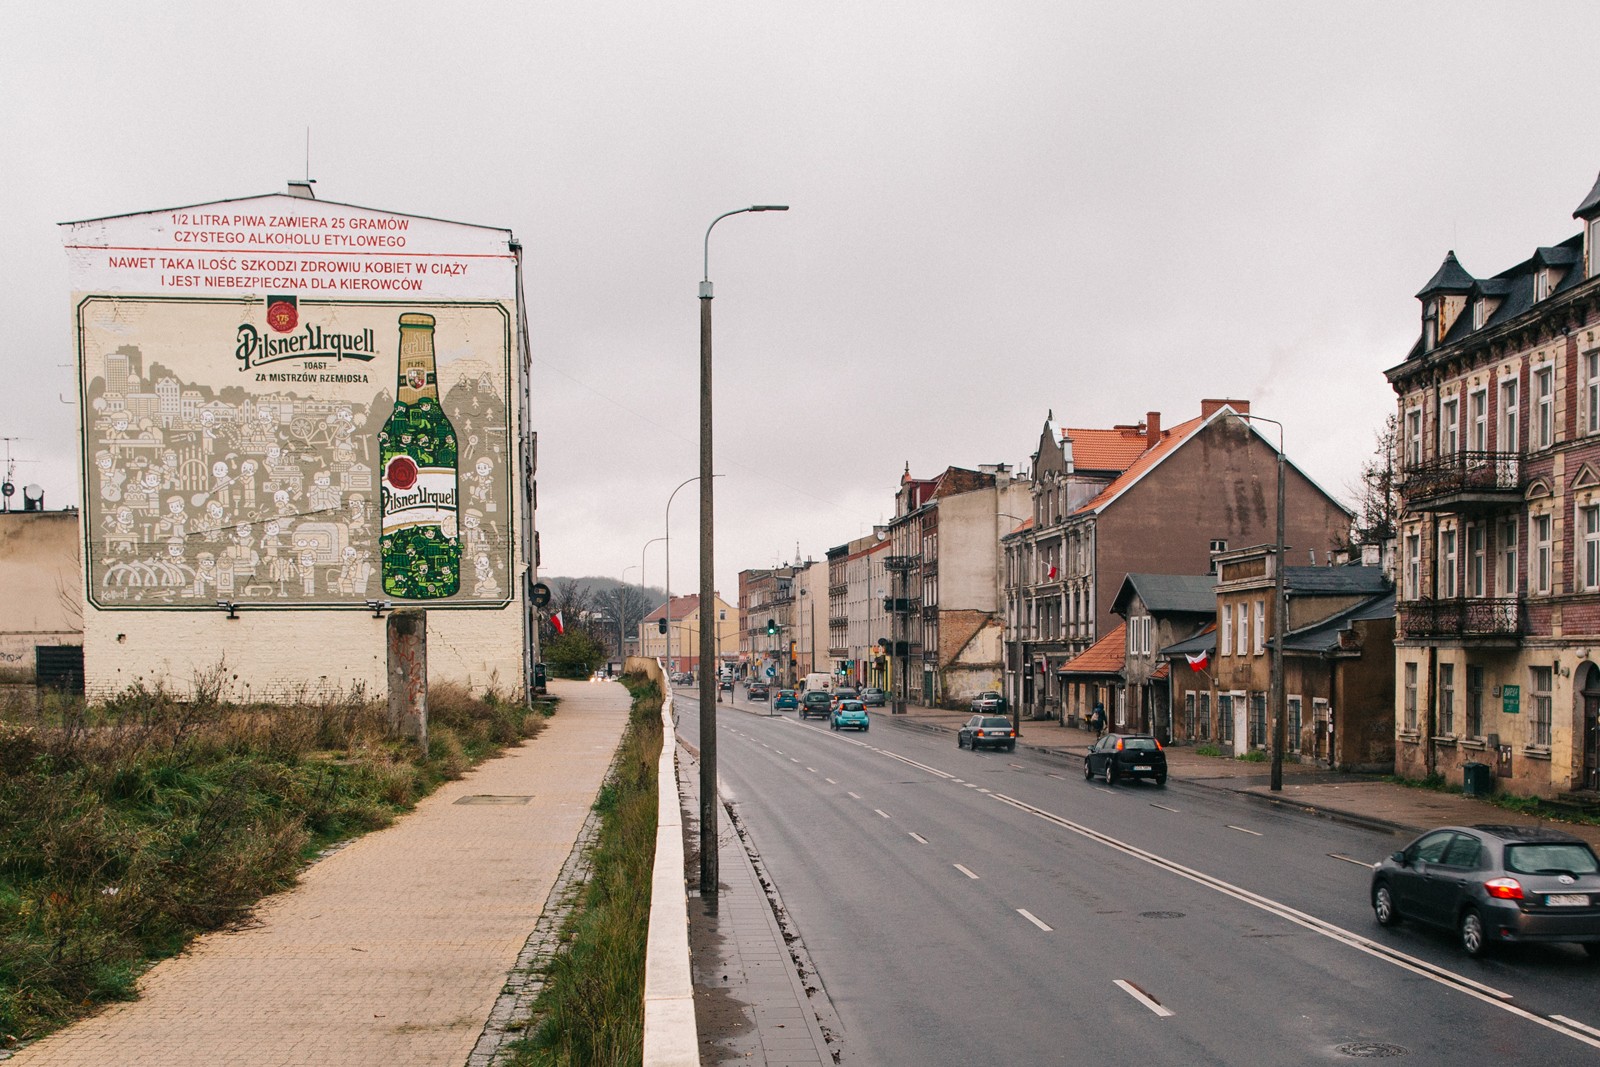 Werbemural in Danzig, Route des St. Wojciech für Kompania Piwowarska | Pilsner Urquell | Portfolio